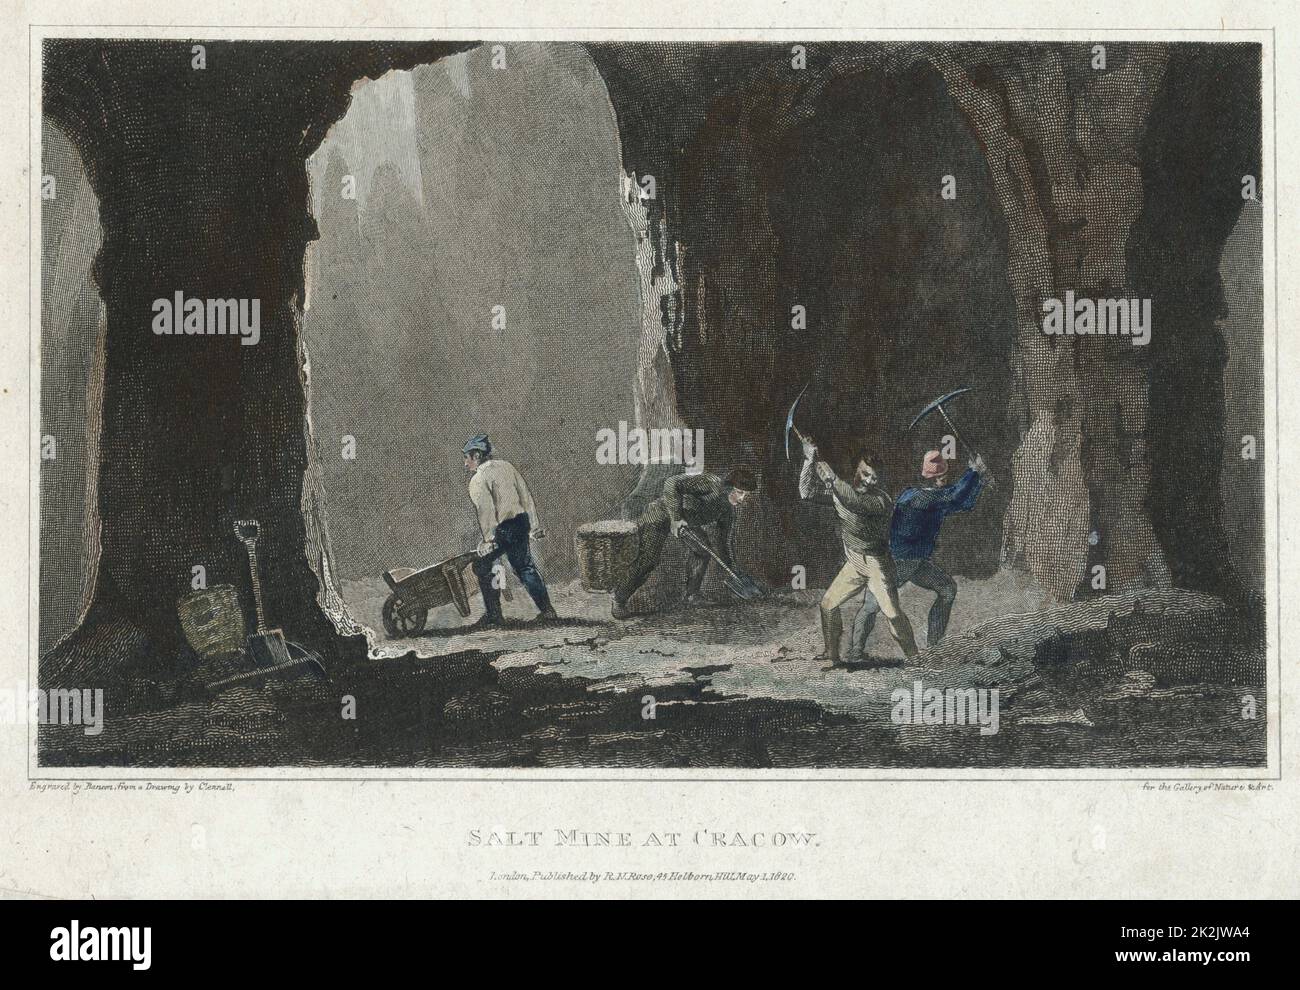 Steinsalz: Bergleute arbeiten in der Salzmine bei Krakau, Polen. Handkolorierter Stich, London, 1820 Stockfoto